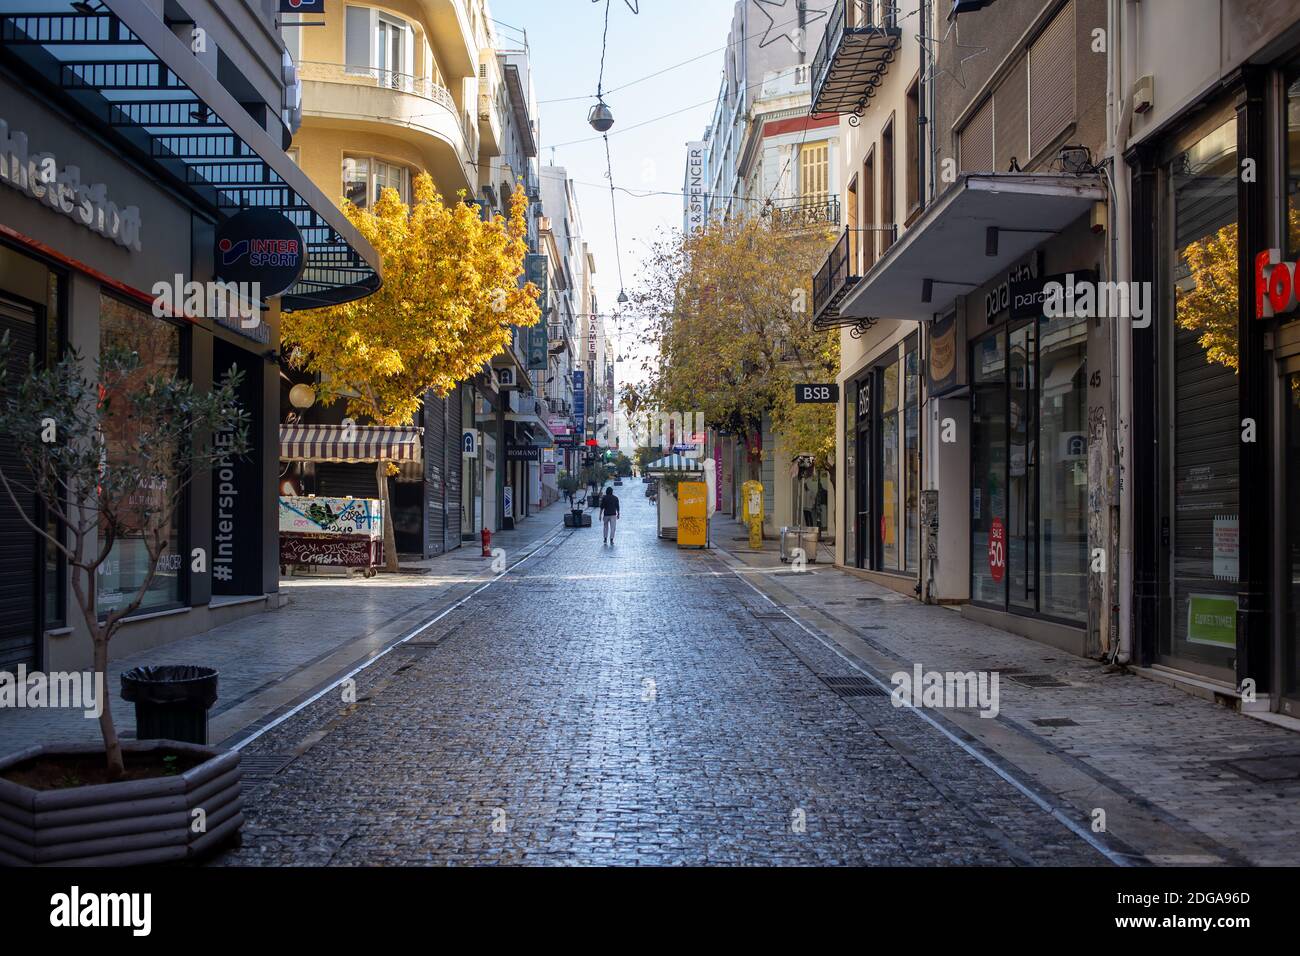 Athen Stadtzentrum, Griechenland. Dezember 2020. Geschäfte in leerer Ermou Straße geschlossen, Wintertag. Blockierung der Coronavirus-Pandemie Stockfoto